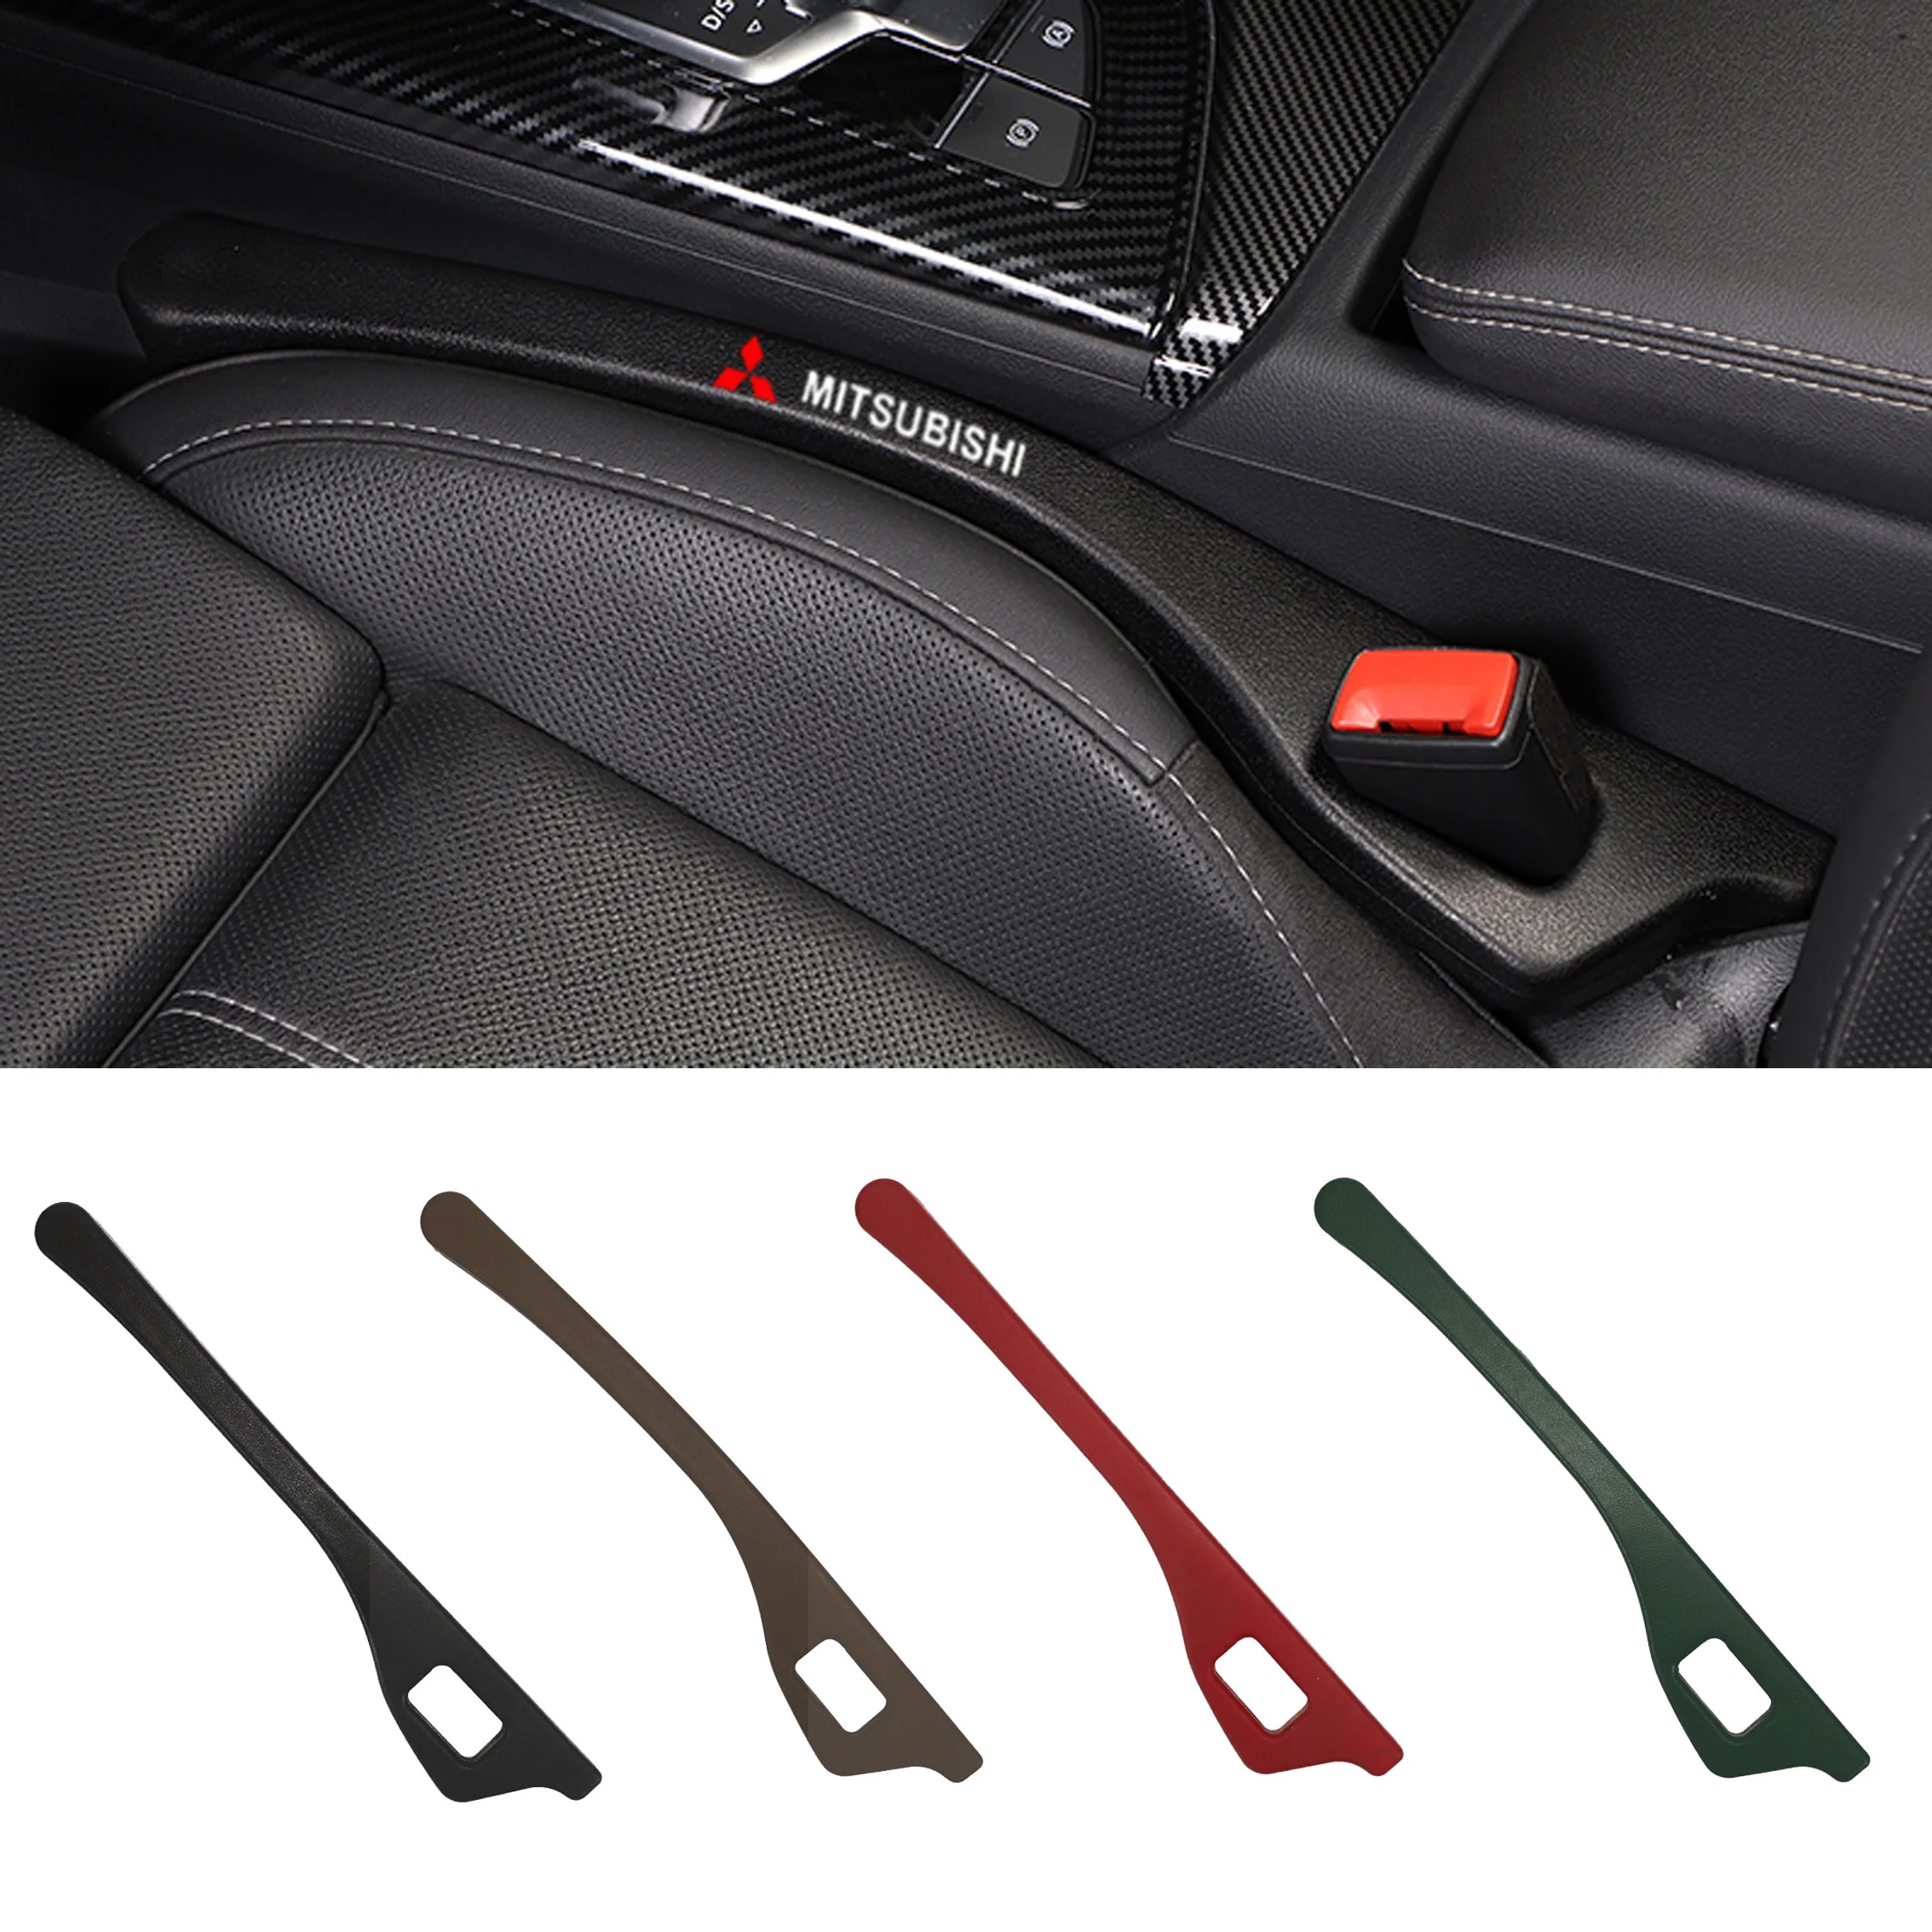 Car seat gap filler anti-leakage plug items anti-drop car interior supplies For Mitsubishi Asx Lancer Pajero Outlander L200 1